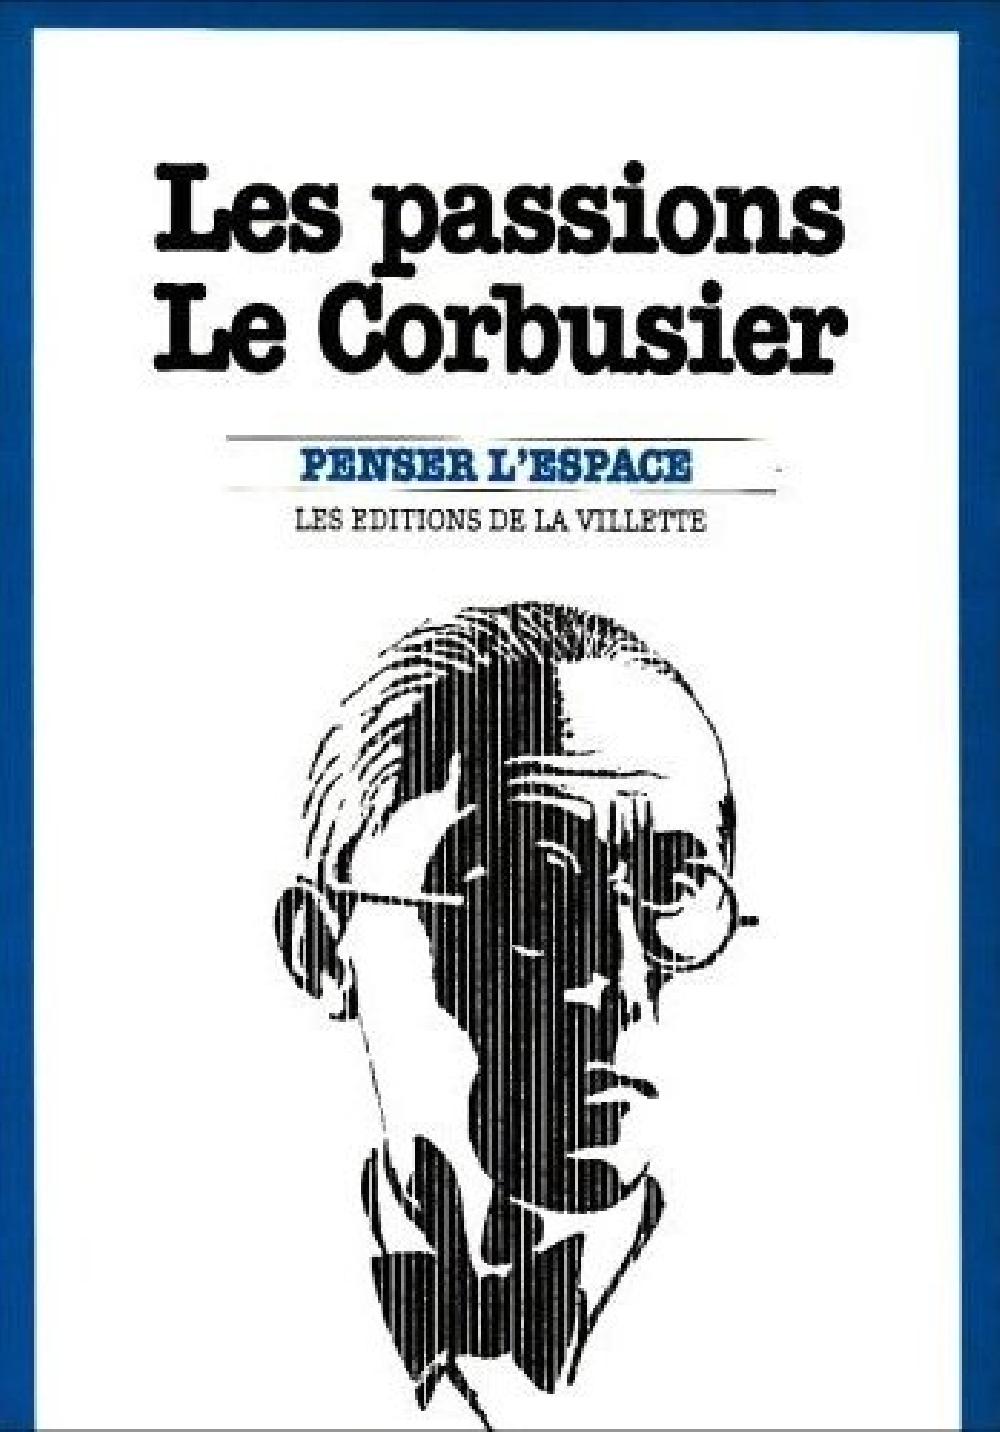 Les passions Le Corbusier